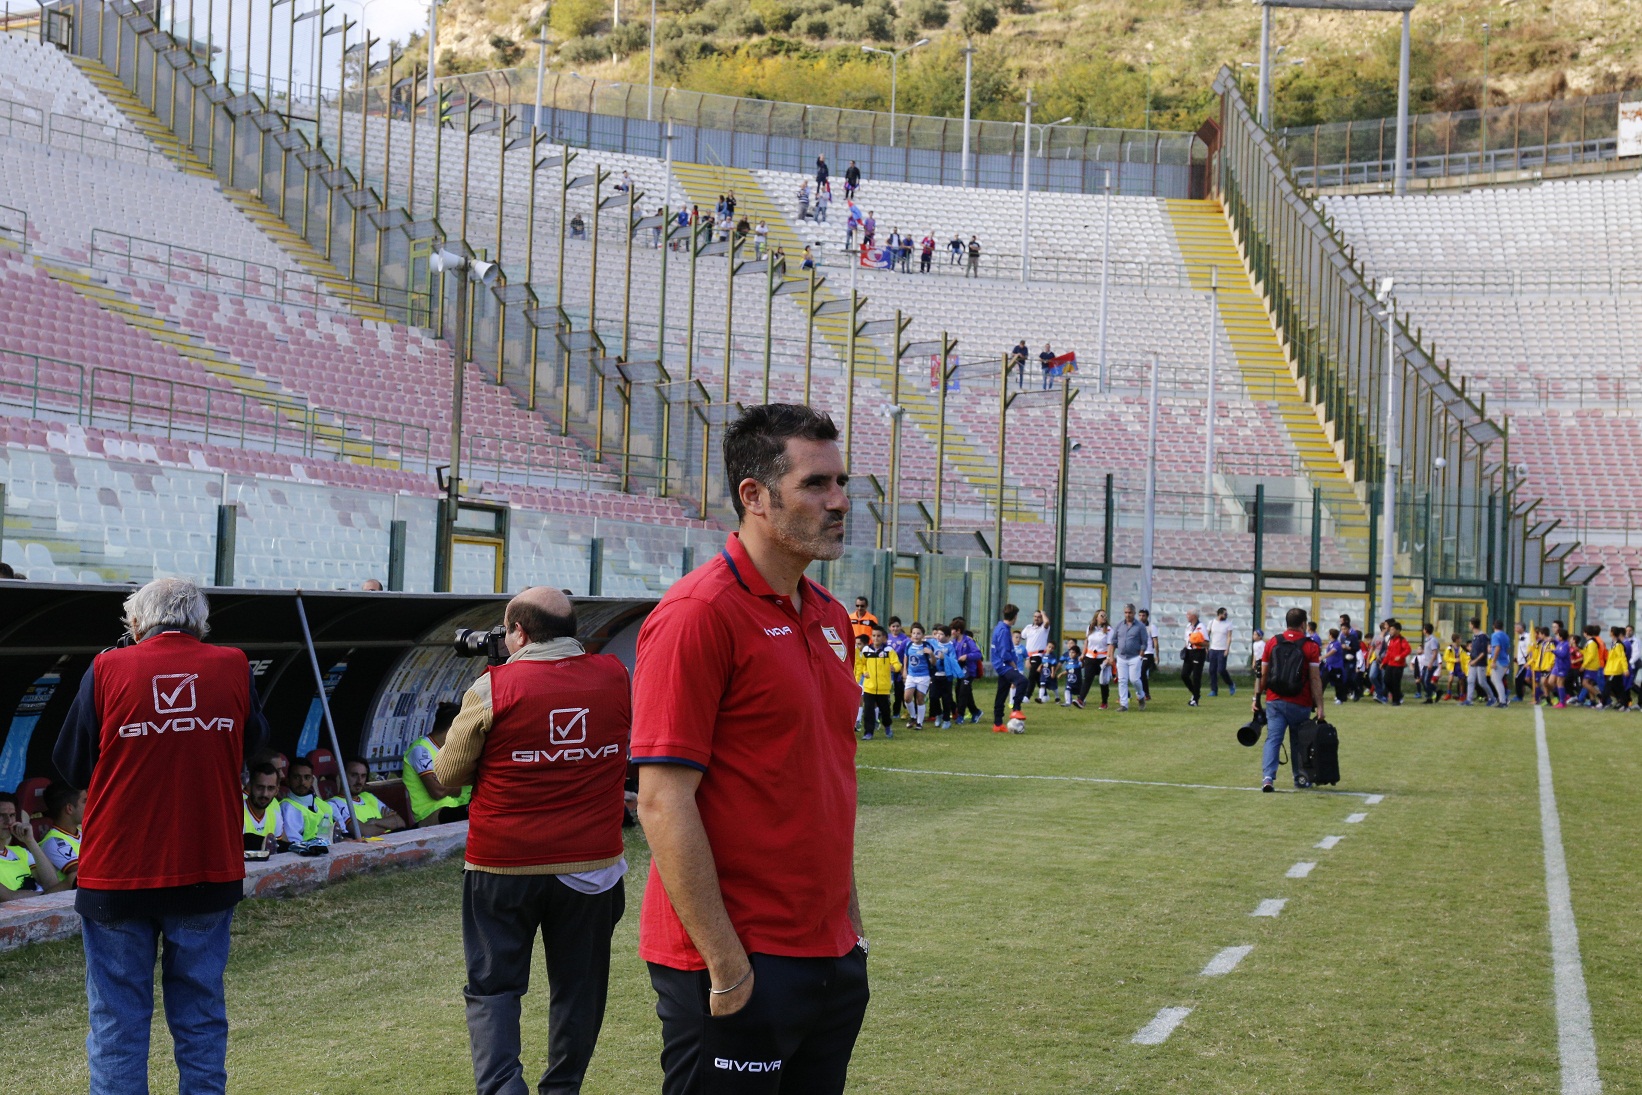 Clamoroso a Messina: sciopero giocatori capeggiato da Lucarelli, salta trasferta a Pagani?